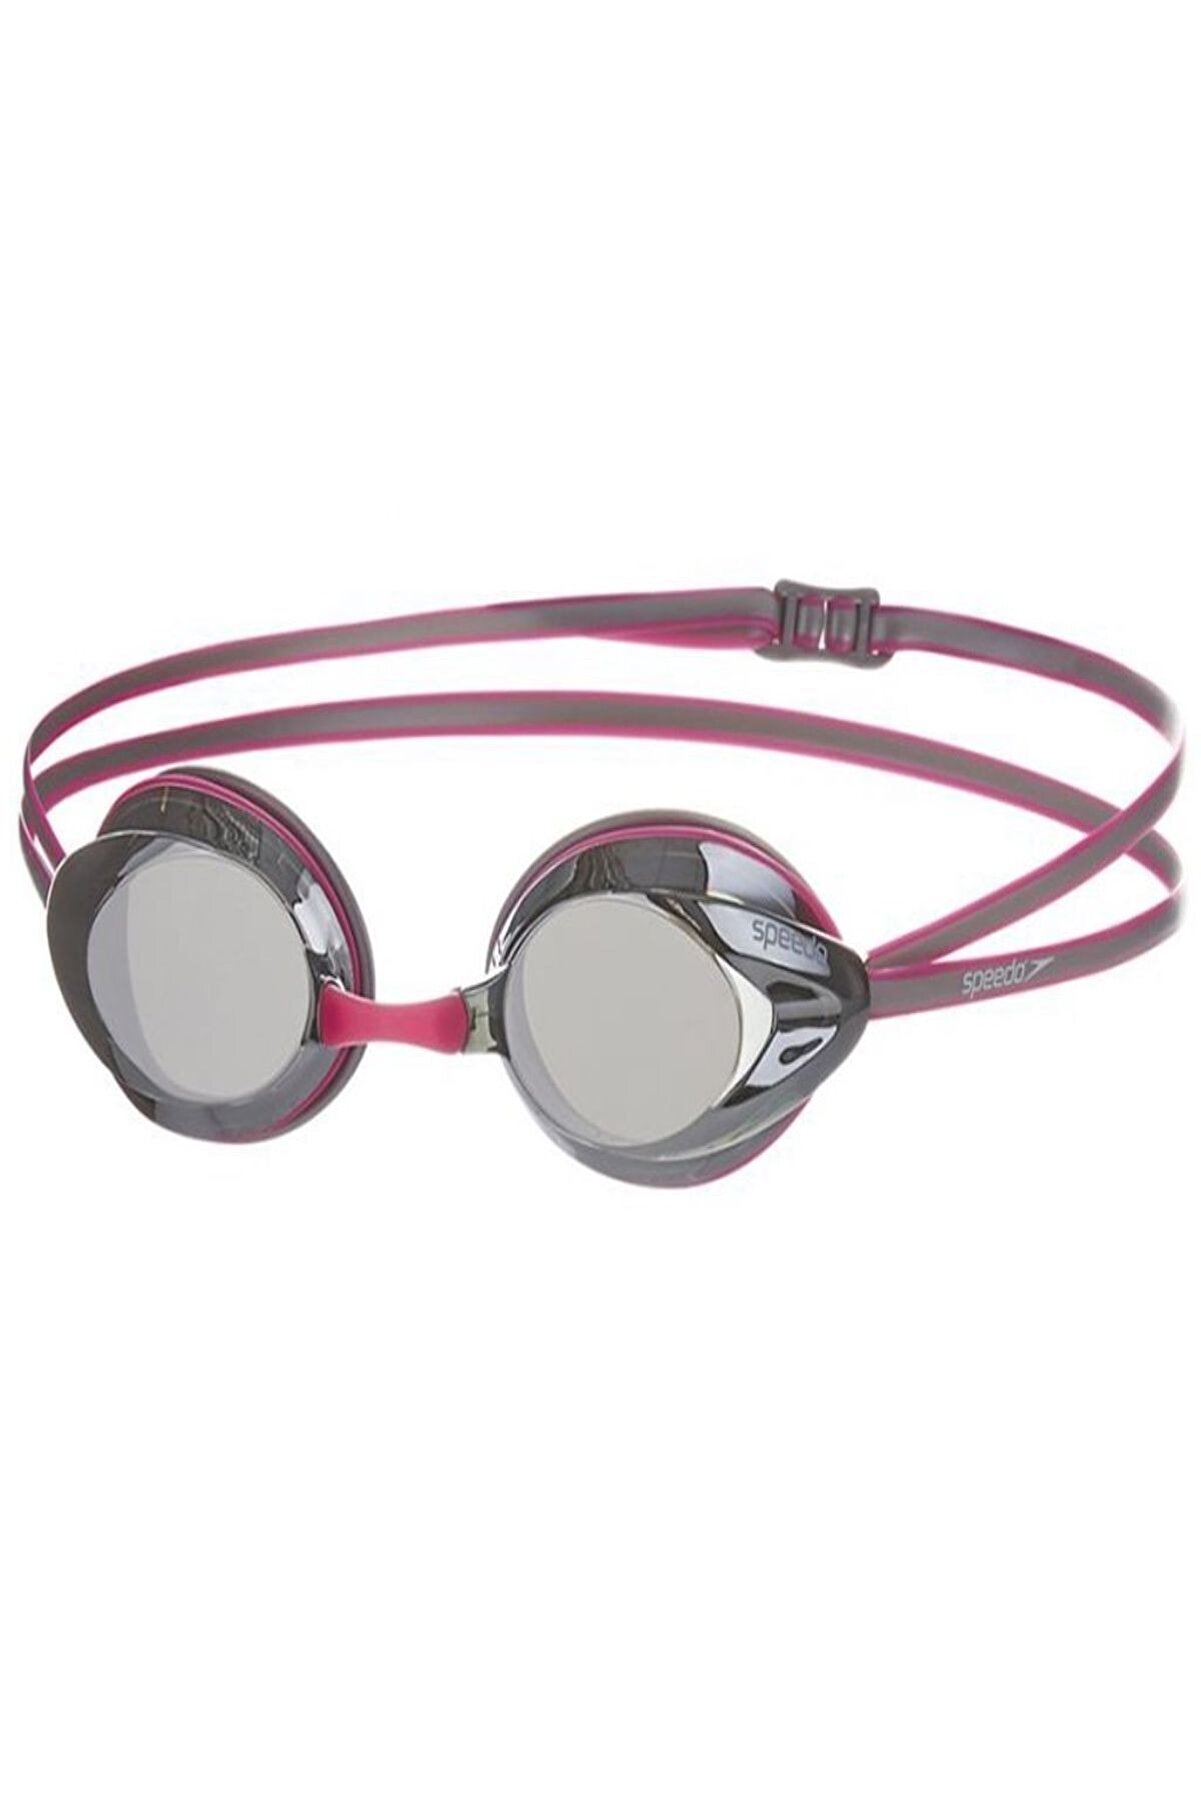 SPEEDO Opal Plus Aynalı Yüzücü Gözlüğü - Pembe